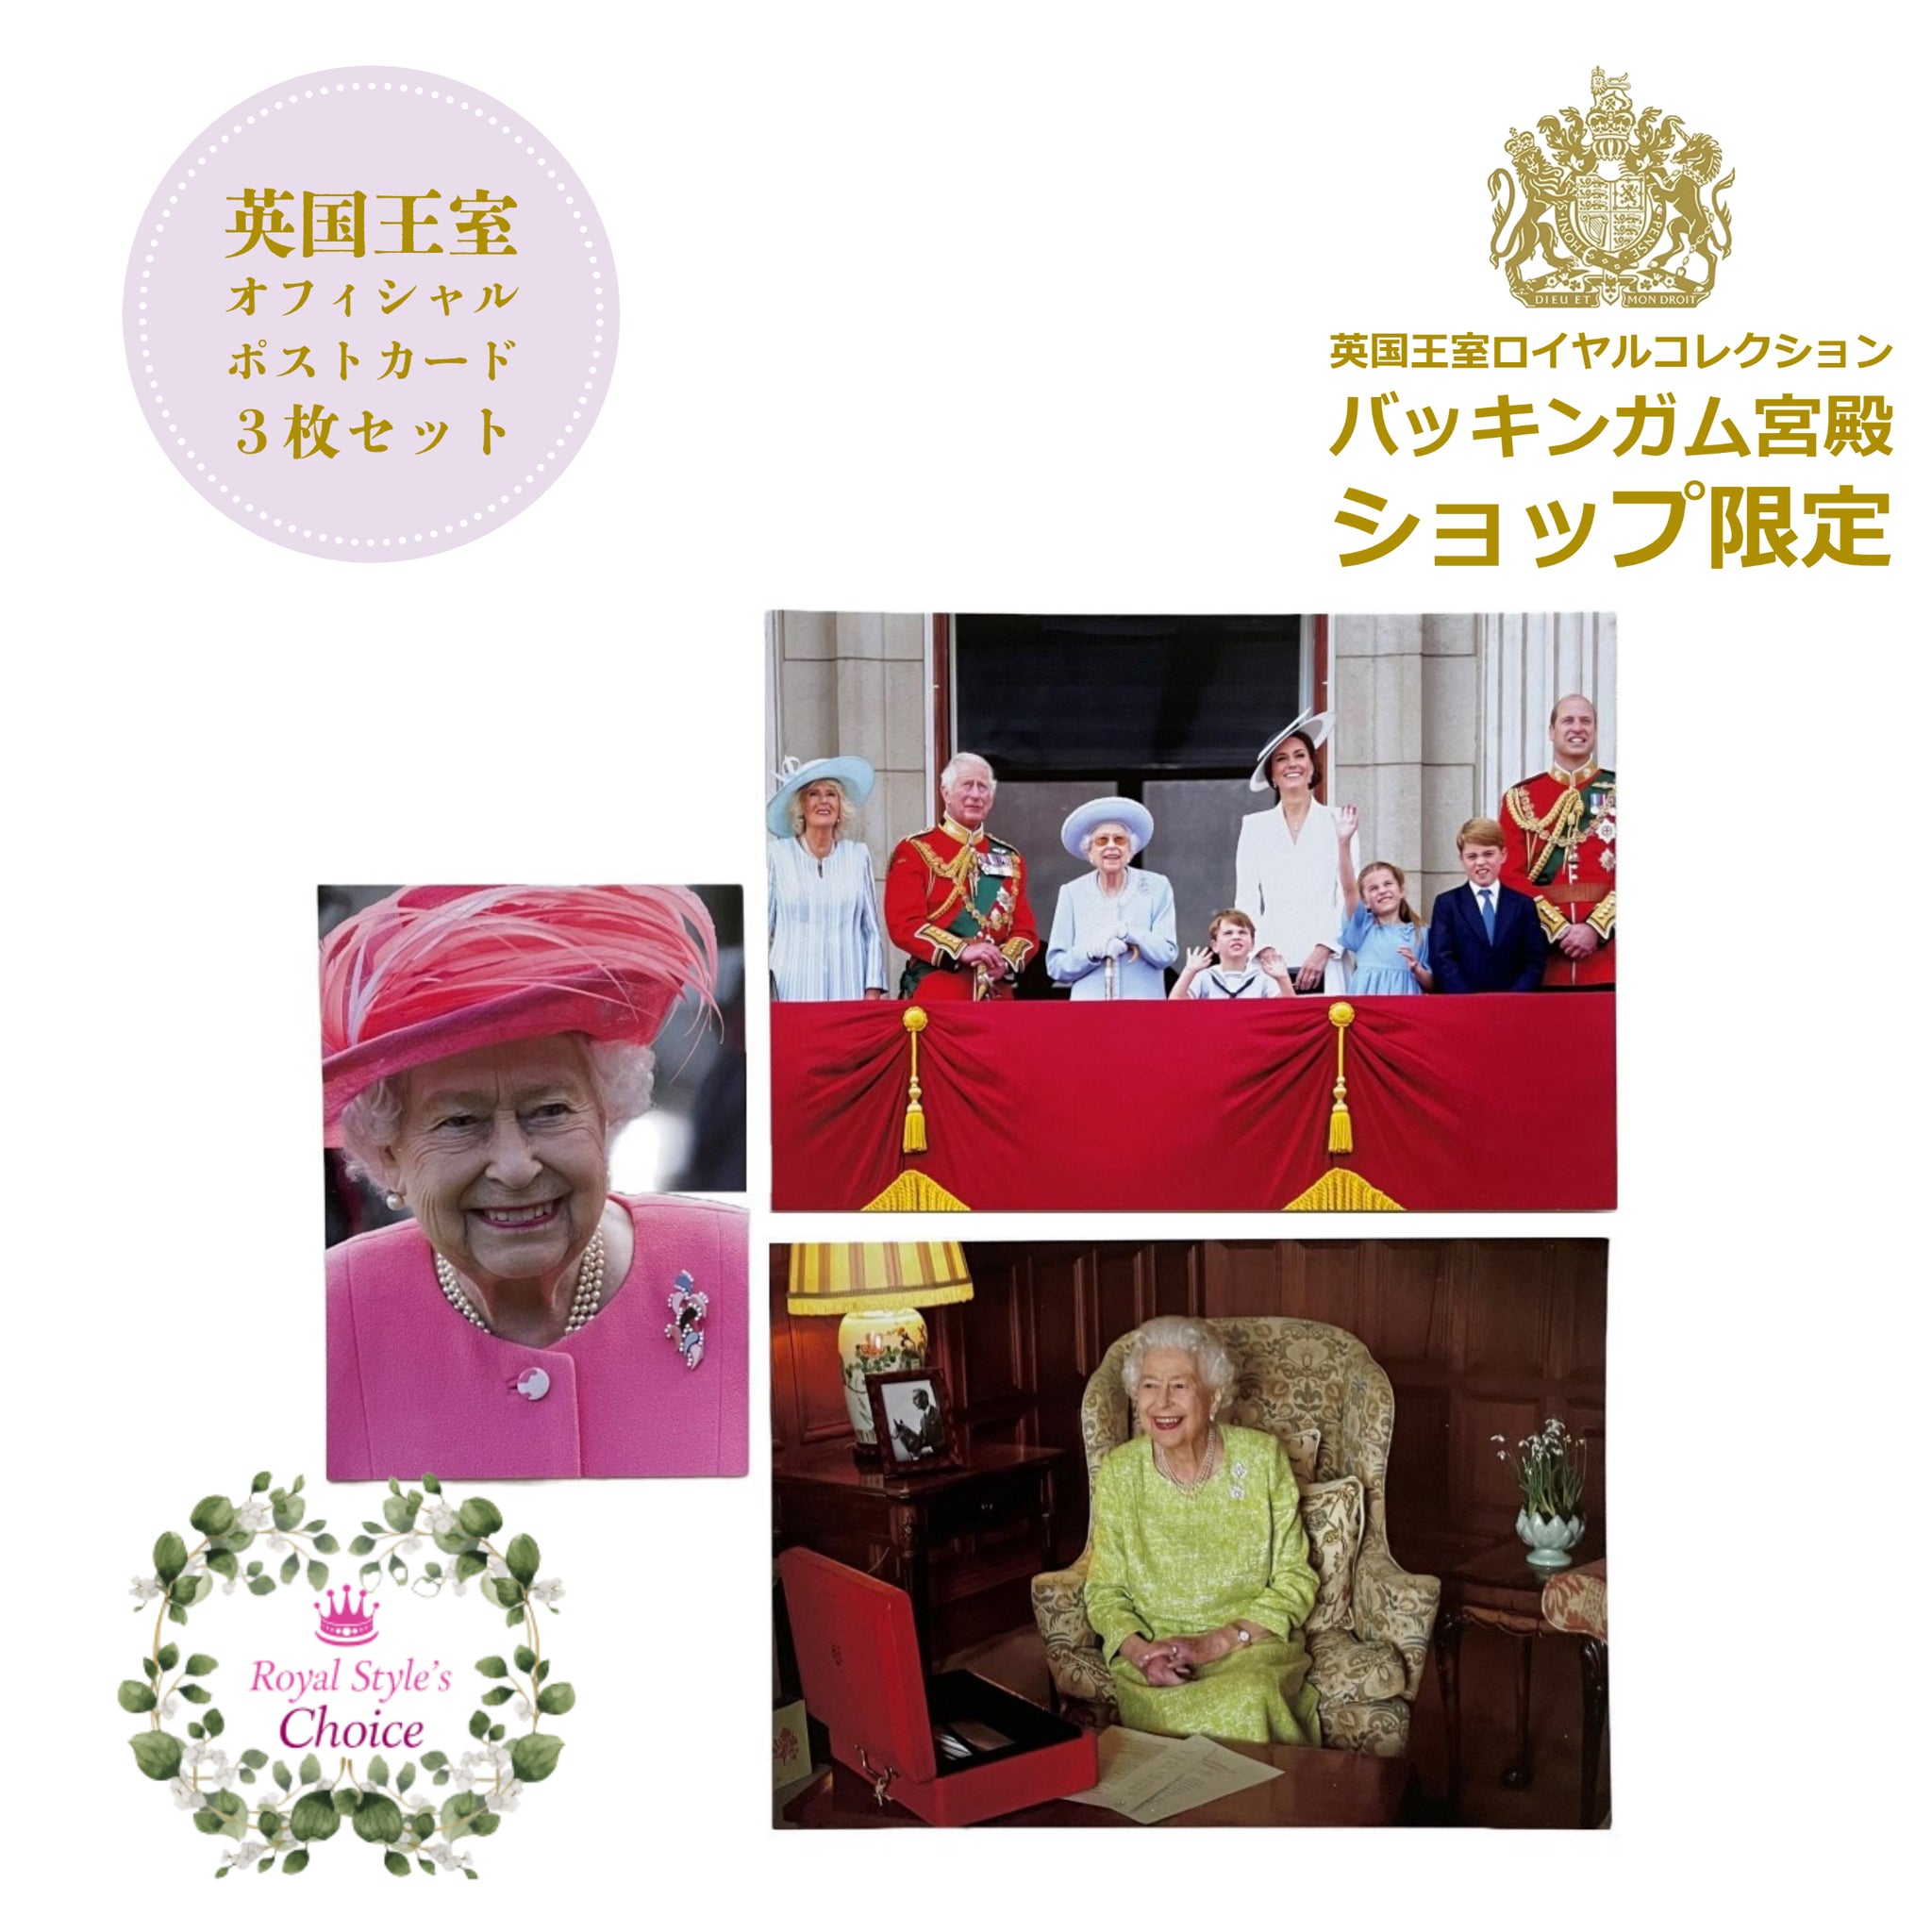 英国王室 バッキンガム宮殿 エリザベス女王 プラチナジュビリー